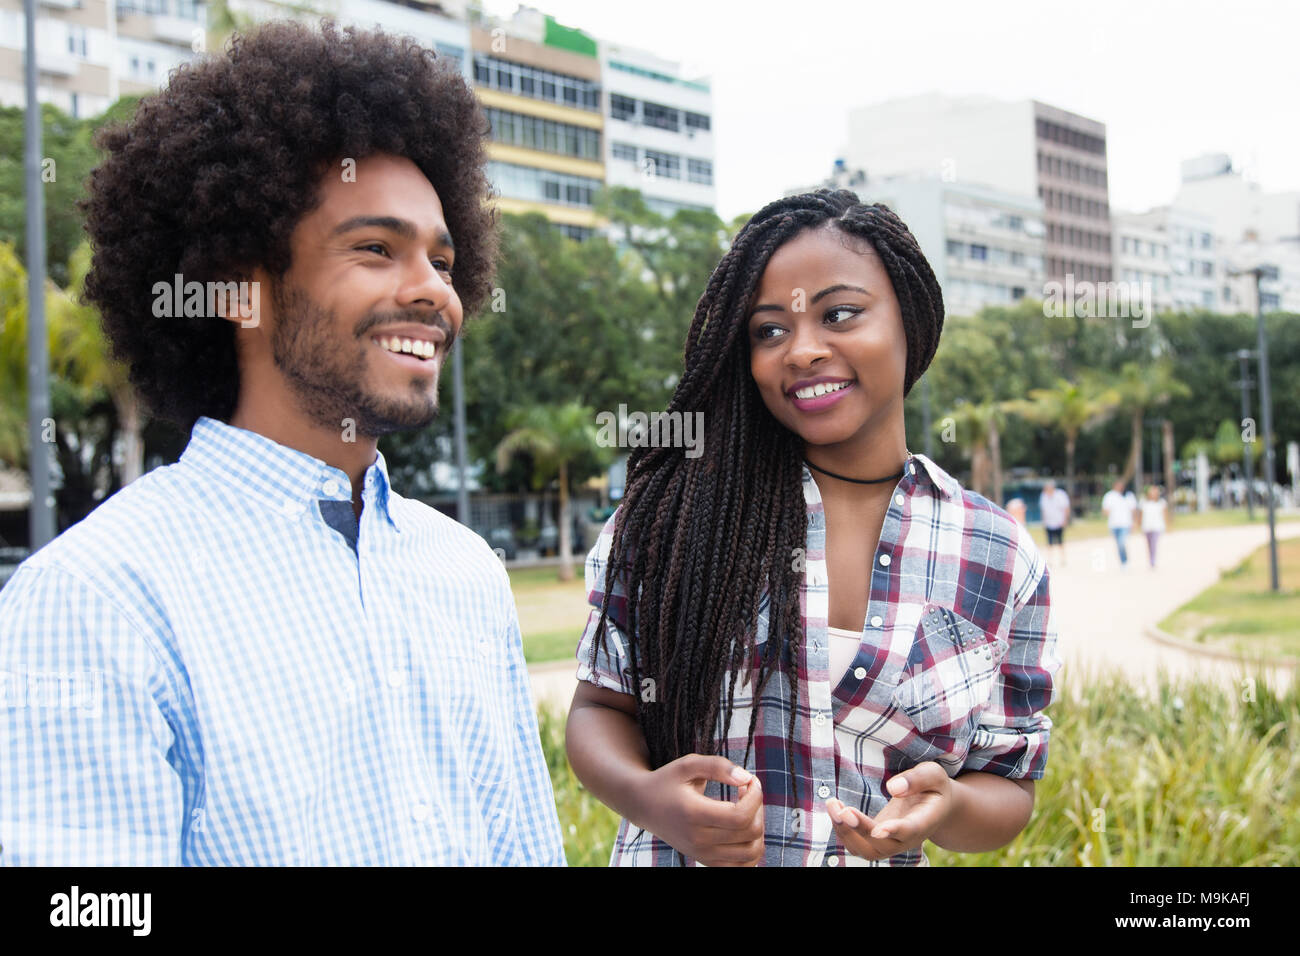 African American donna con dreadlocks flirtare con hipster uomo all'aperto nella città Foto Stock